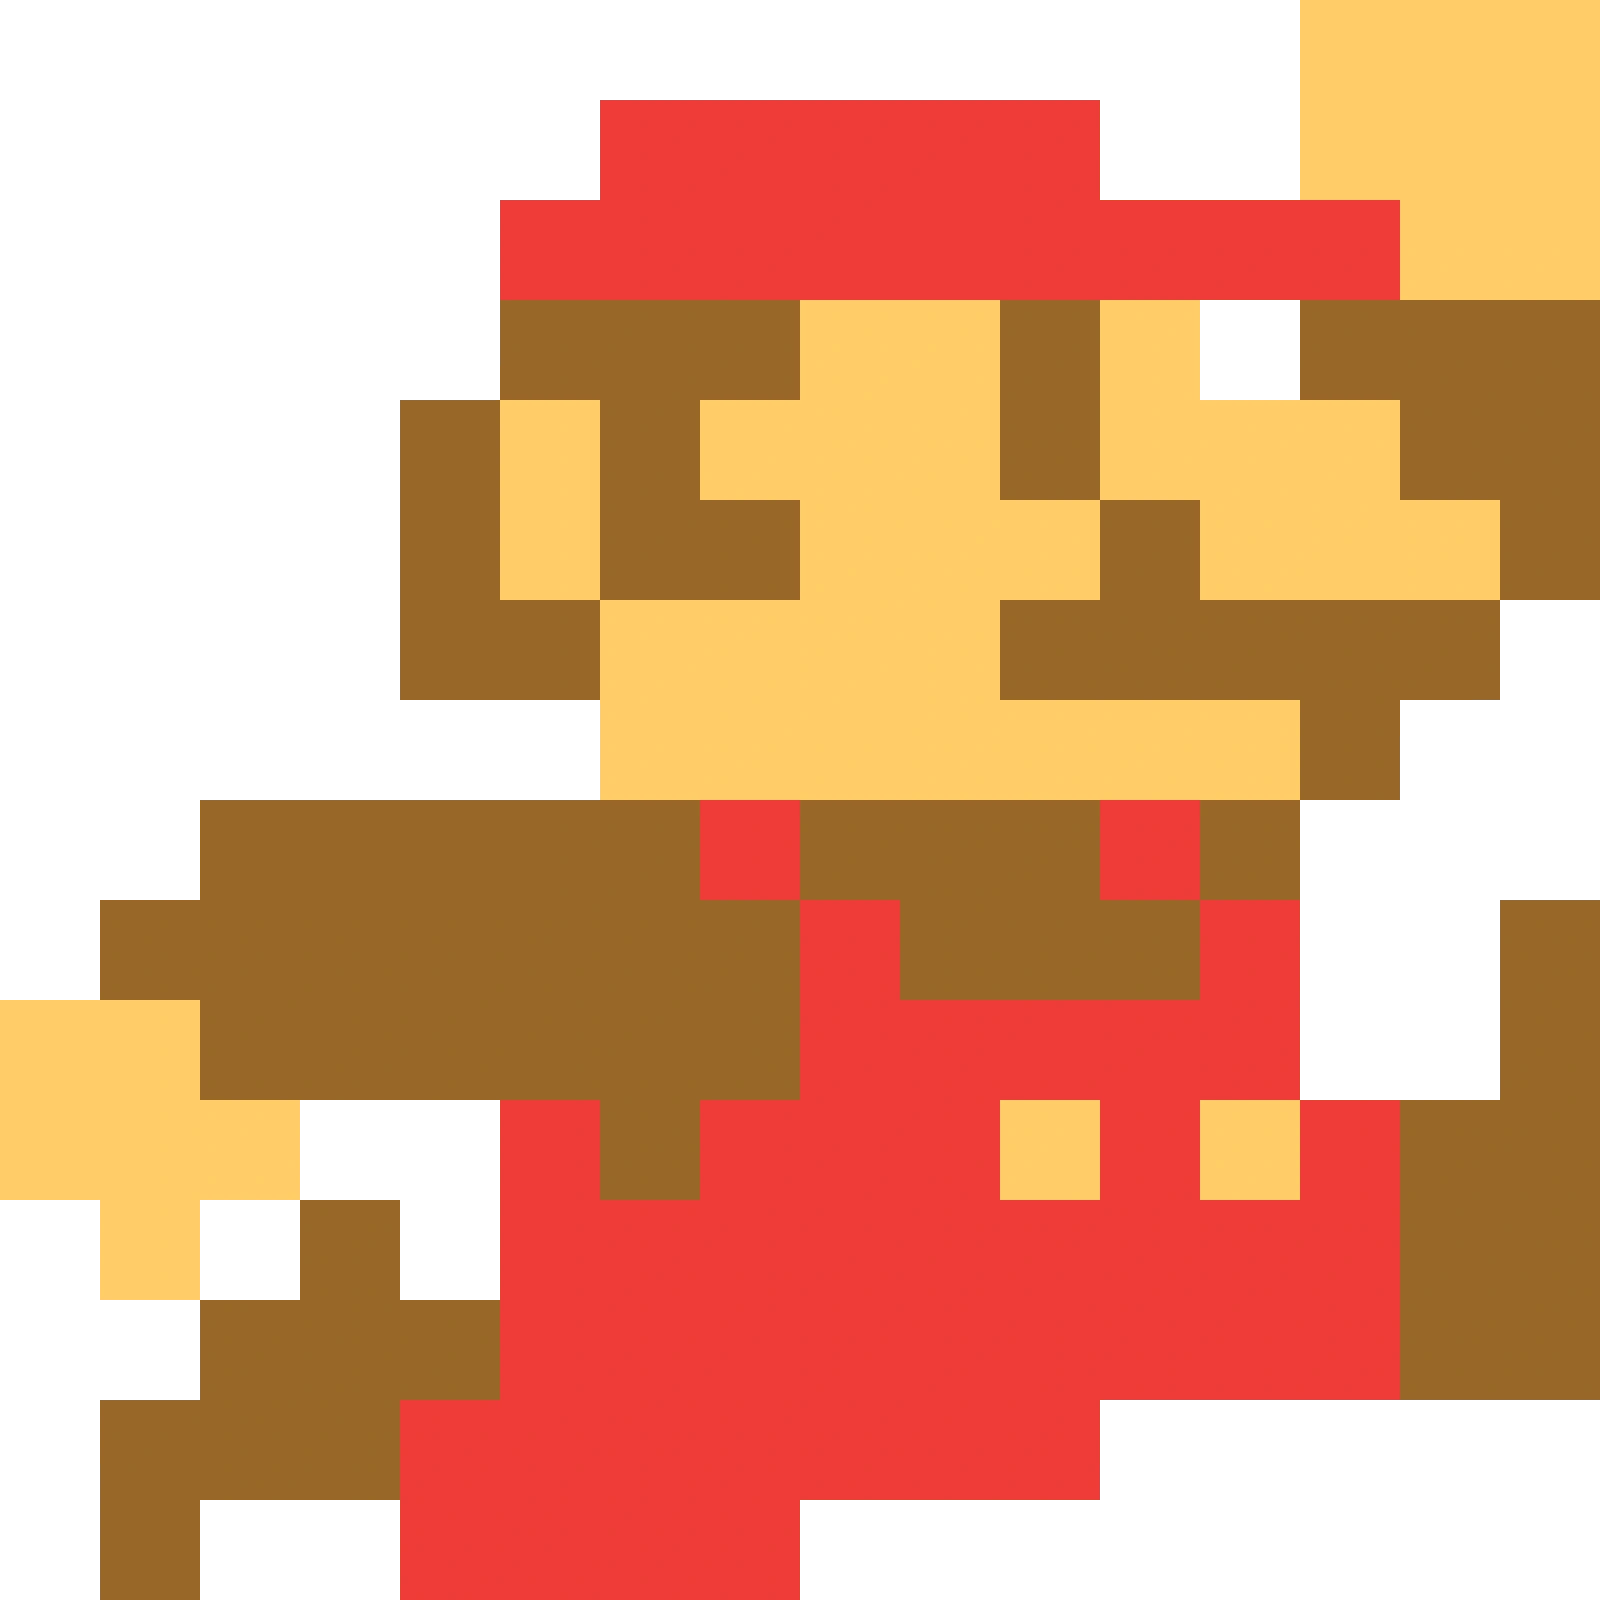 8 Bit Mario Blank Meme Template